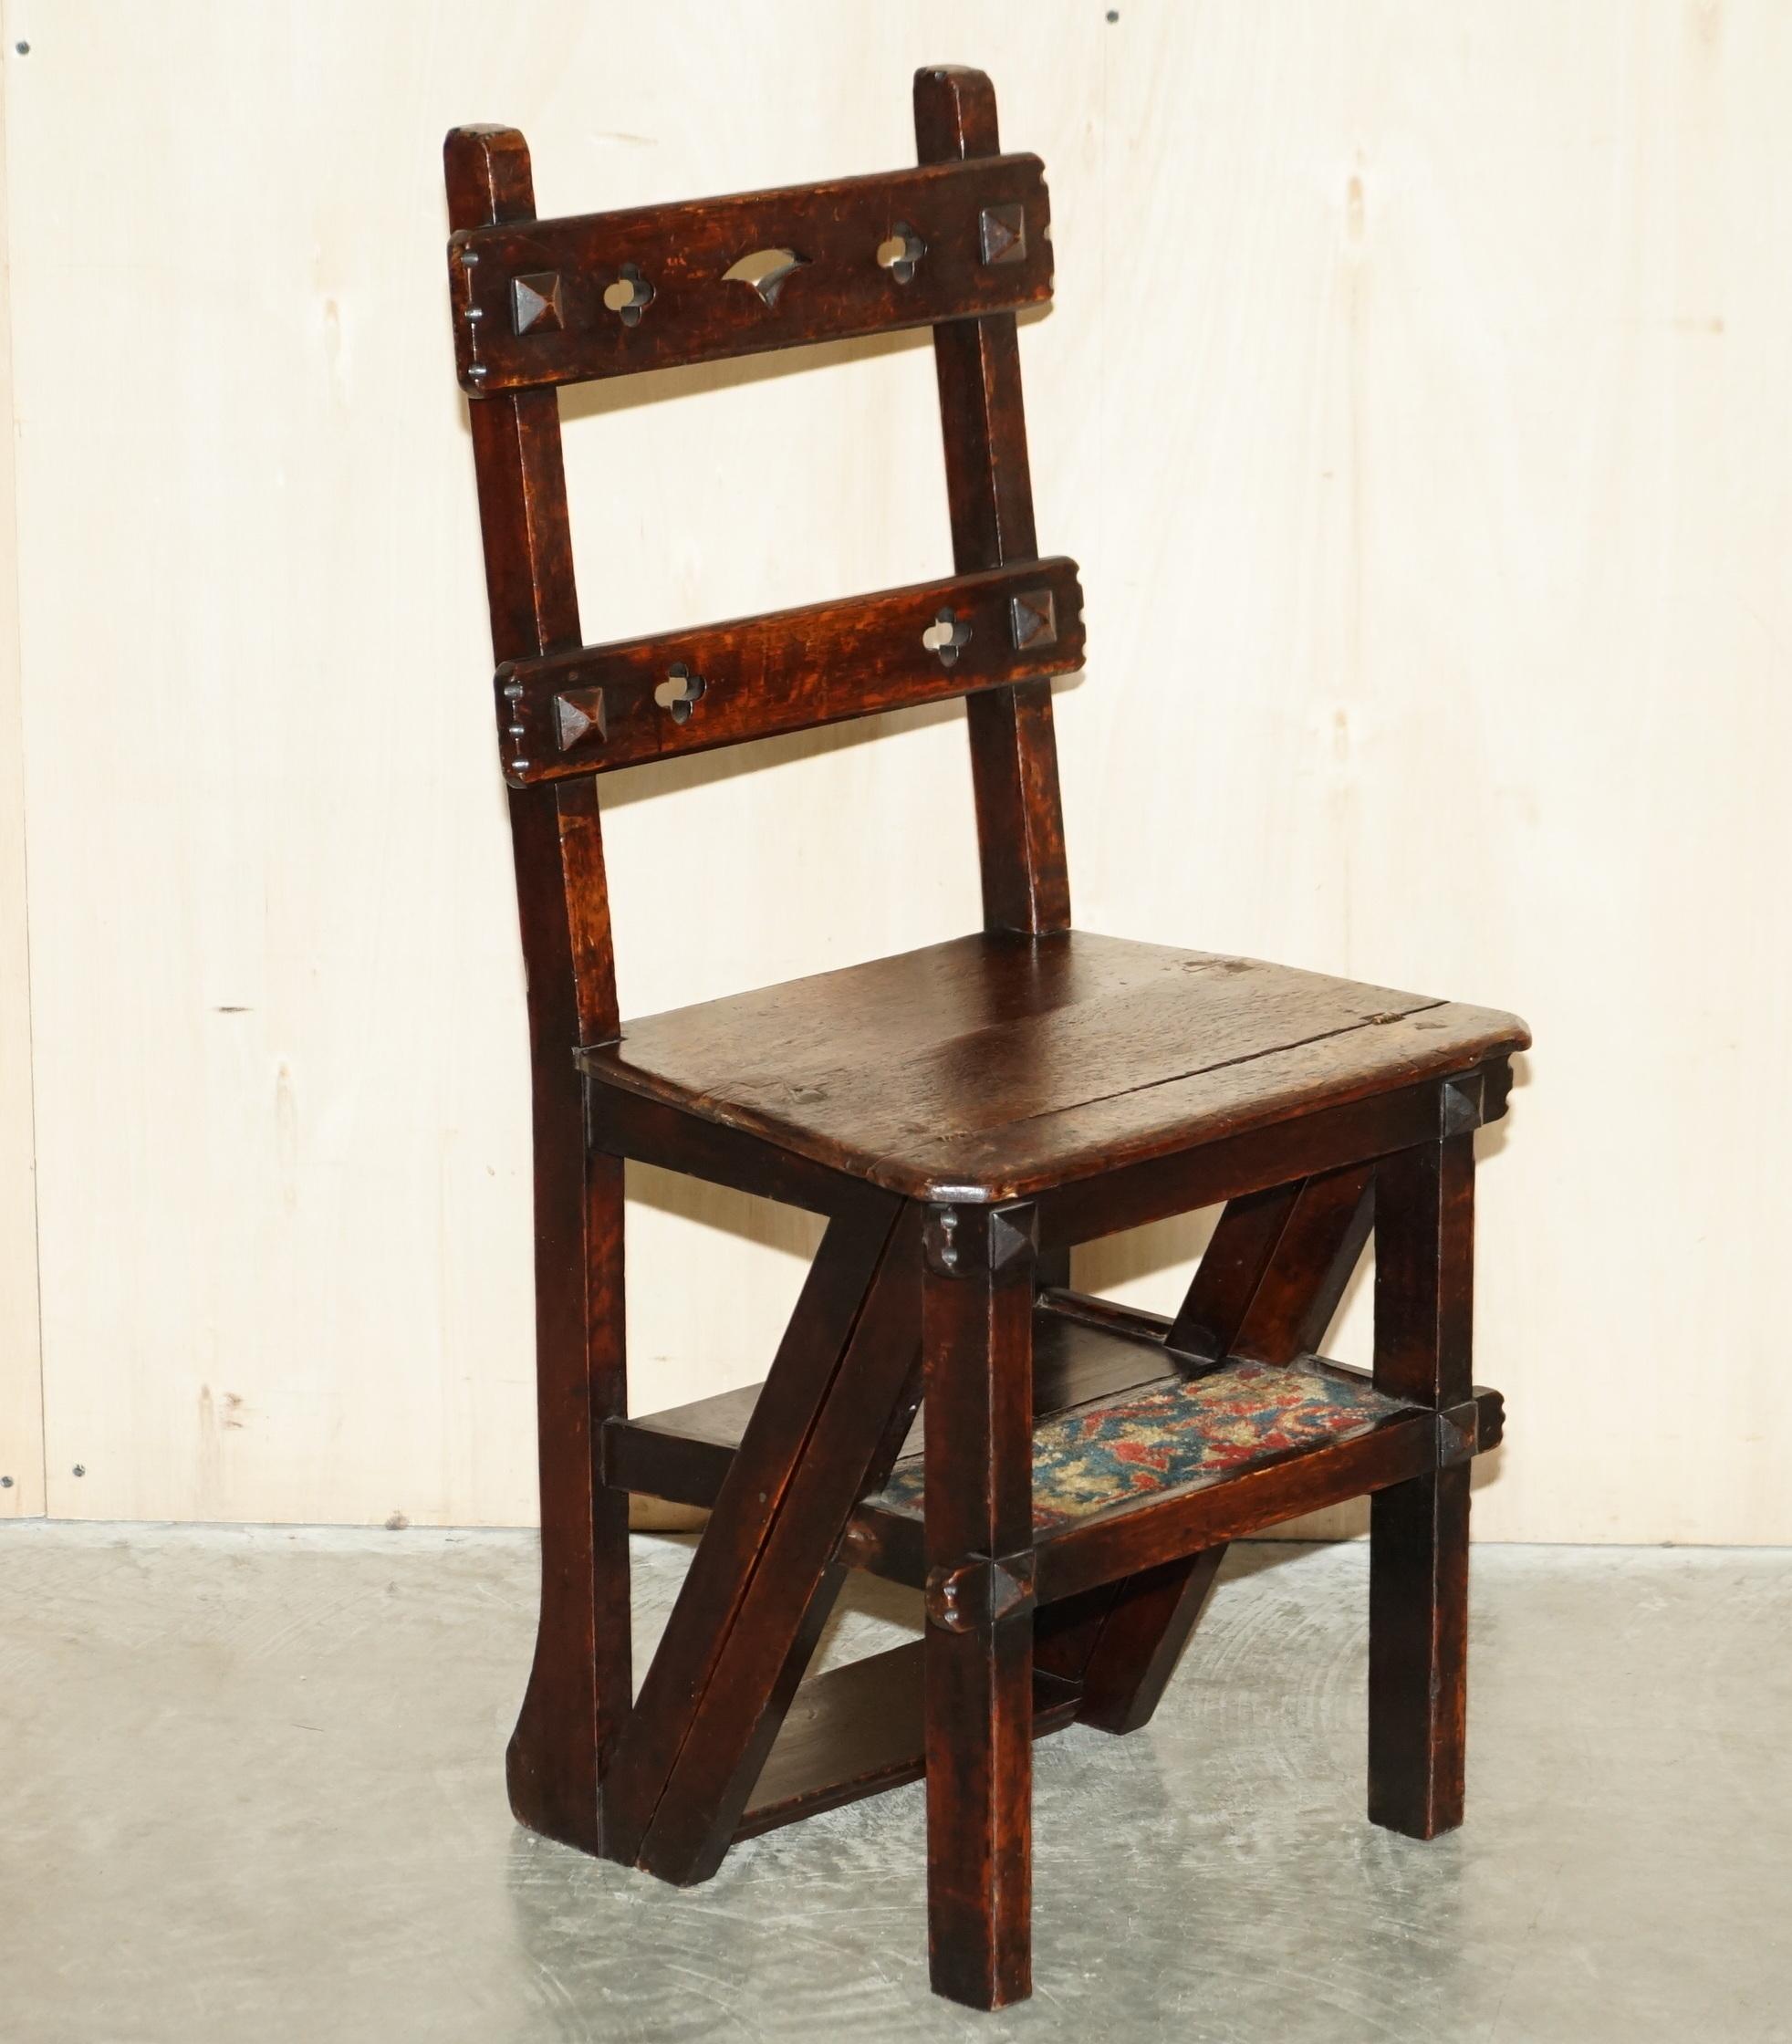 Wir freuen uns, diese schöne antike Arts & Crafts viktorianischen metamorphic Bibliothek Schritte Stuhl in Eiche mit Zeit gepolstert Teppich Schritte zum Verkauf anbieten.

Ein sehr charmantes Stück mit hohem Sammlerwert, das als Bibliothekstreppe